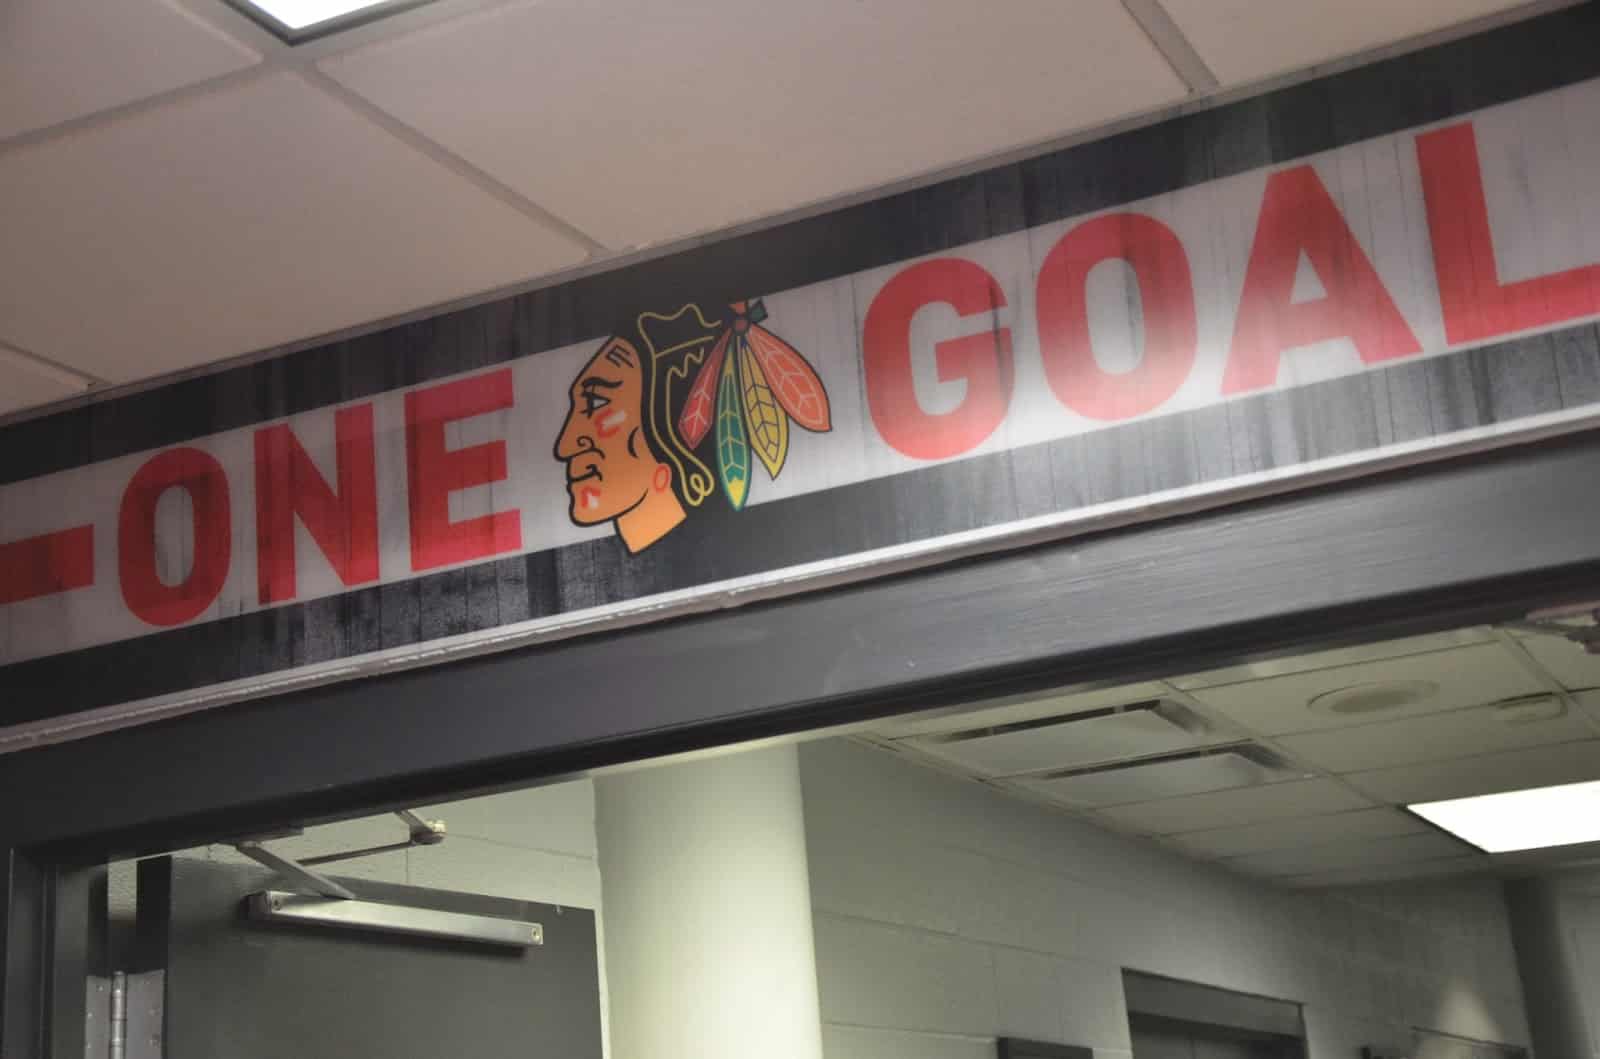 One Goal in the Blackhawks locker room at the United Center